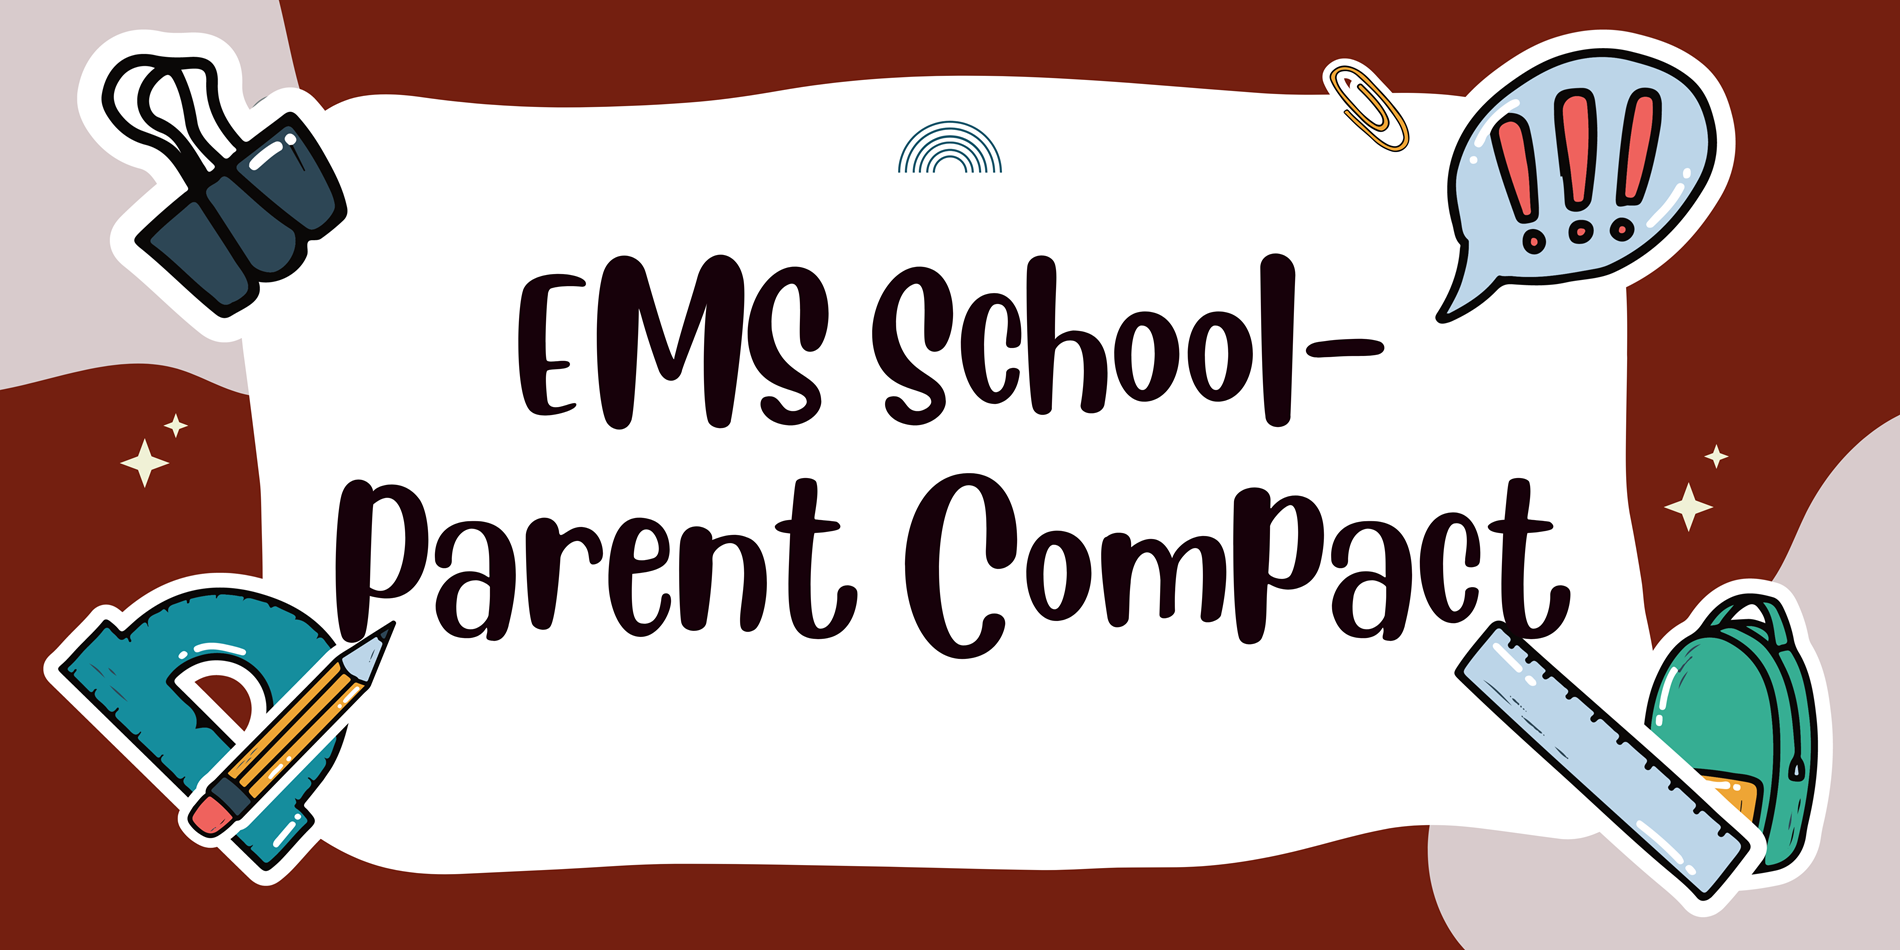 School-Parent Compact